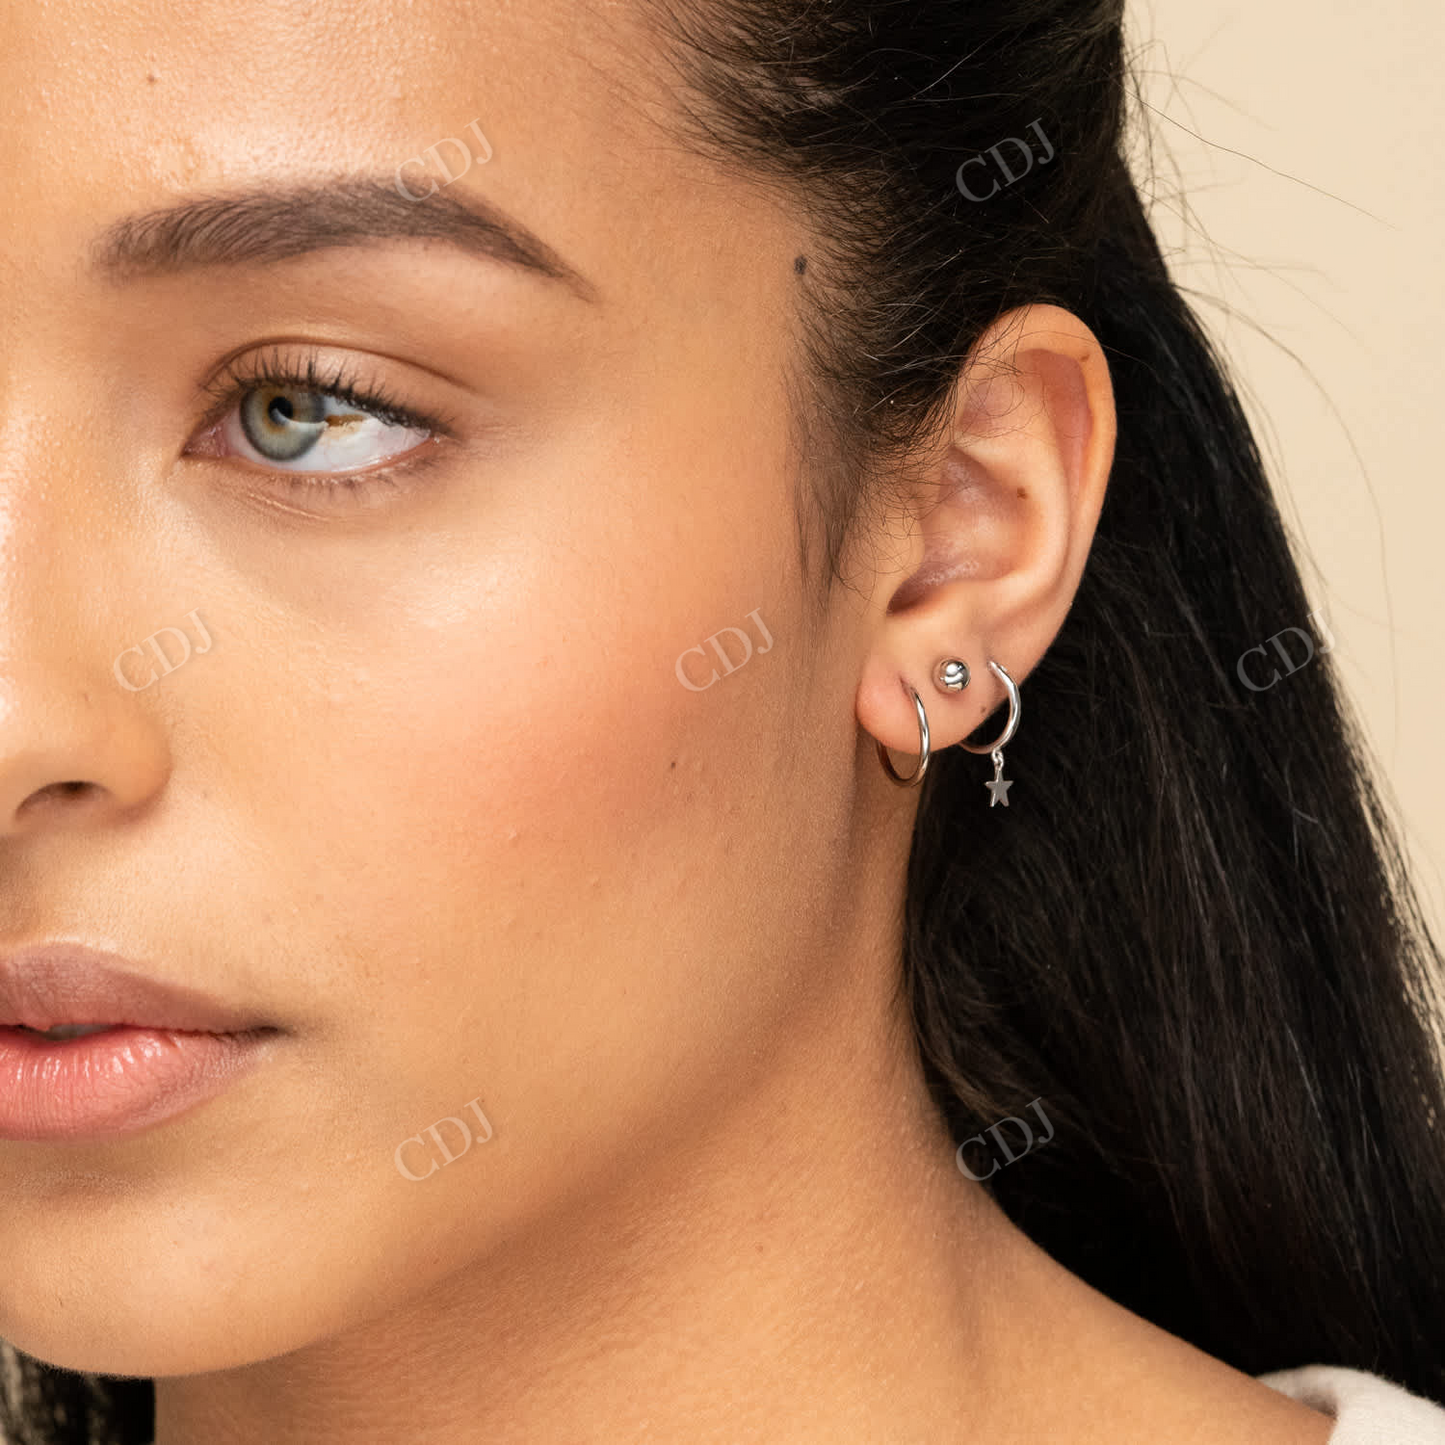 White Gold Small Hoop Earrings For Women